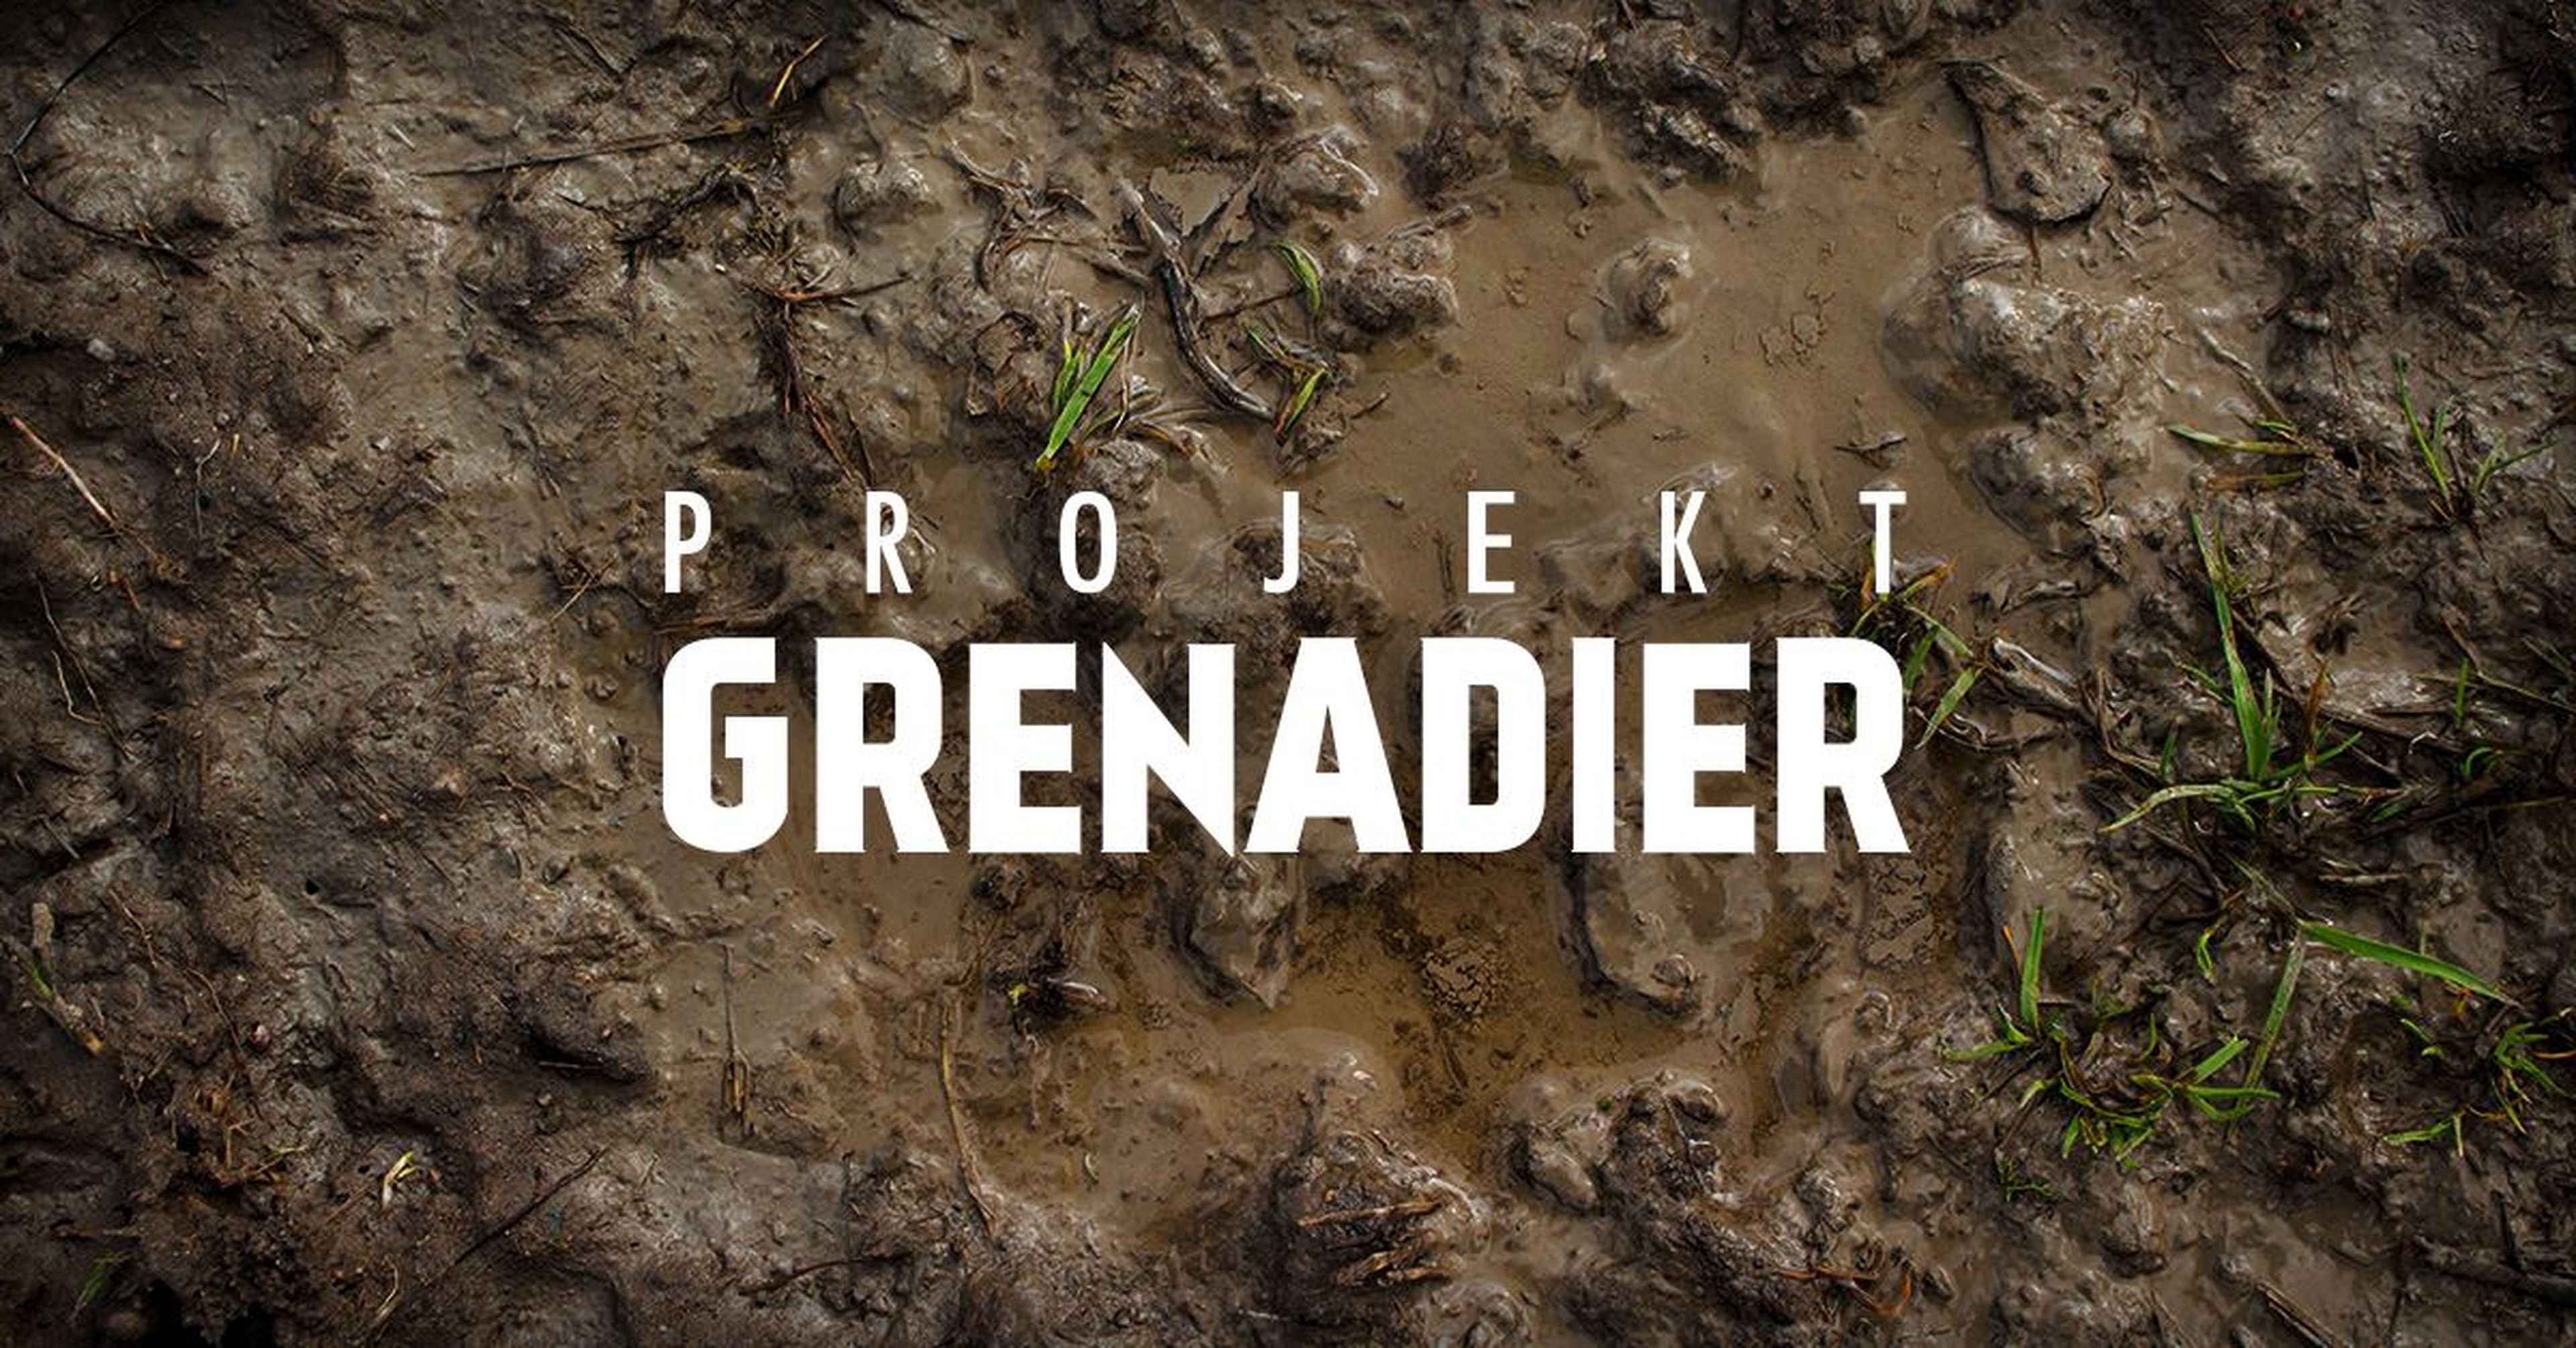 Projekt Grenadier